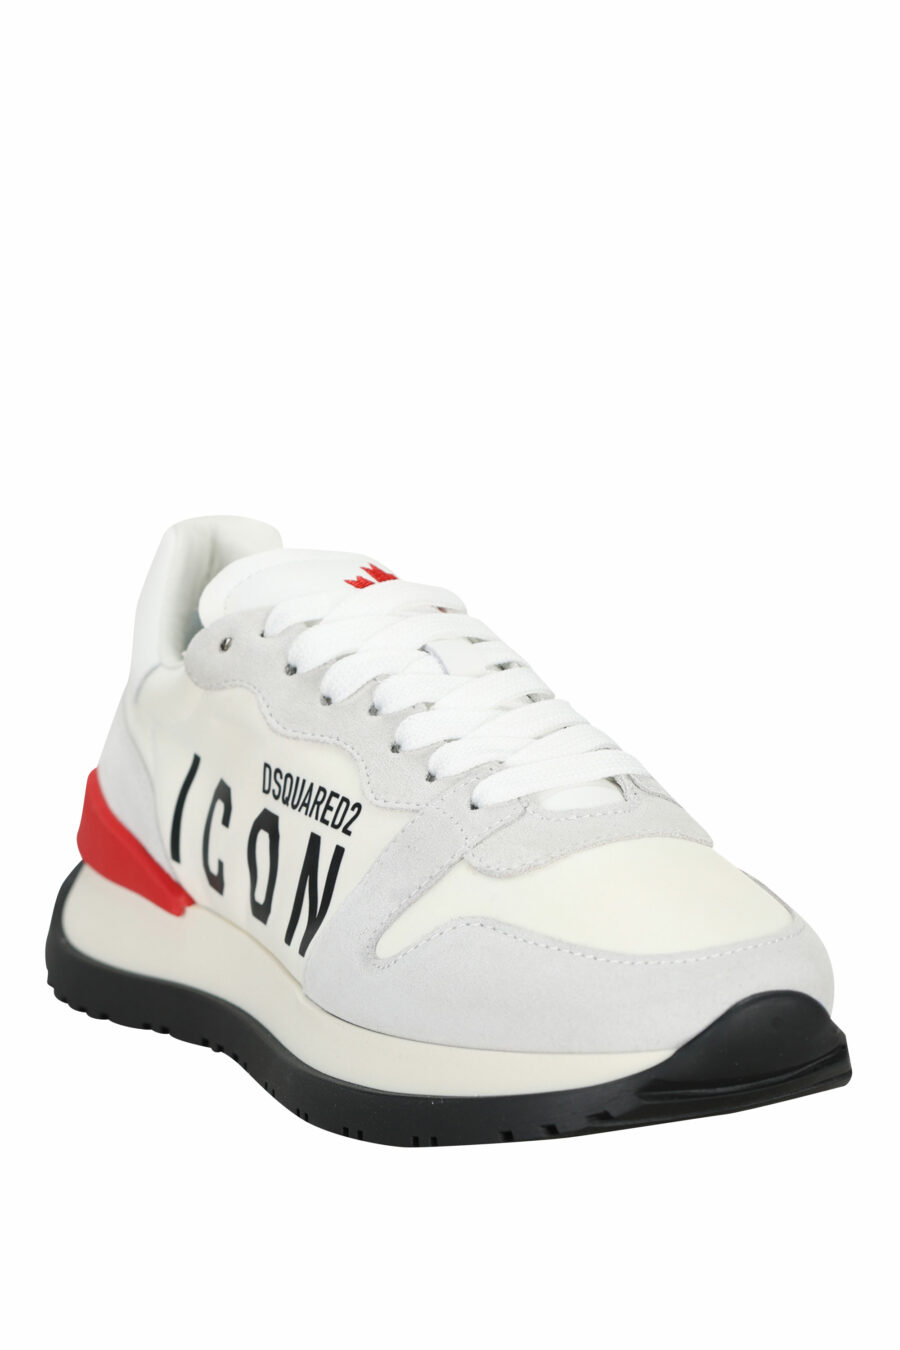 Zapatillas blancas mix con rojo y minilogo "icon" - 8055777303870 1